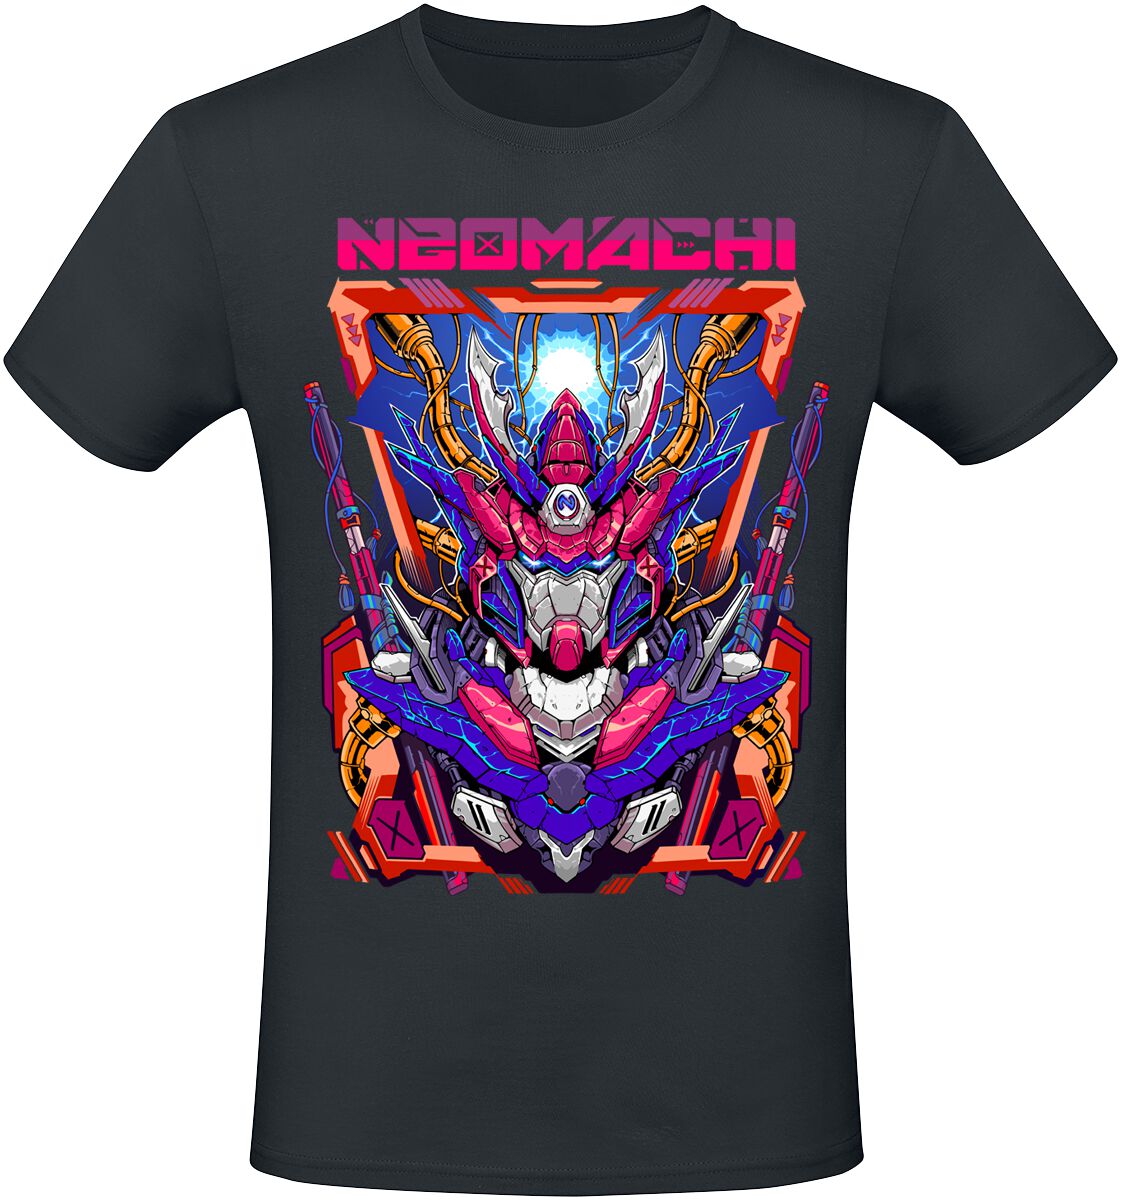 NEOMACHI - Gaming T-Shirt - MECHA - S bis XXL - für Männer - Größe S - schwarz  - EMP exklusives Merchandise!